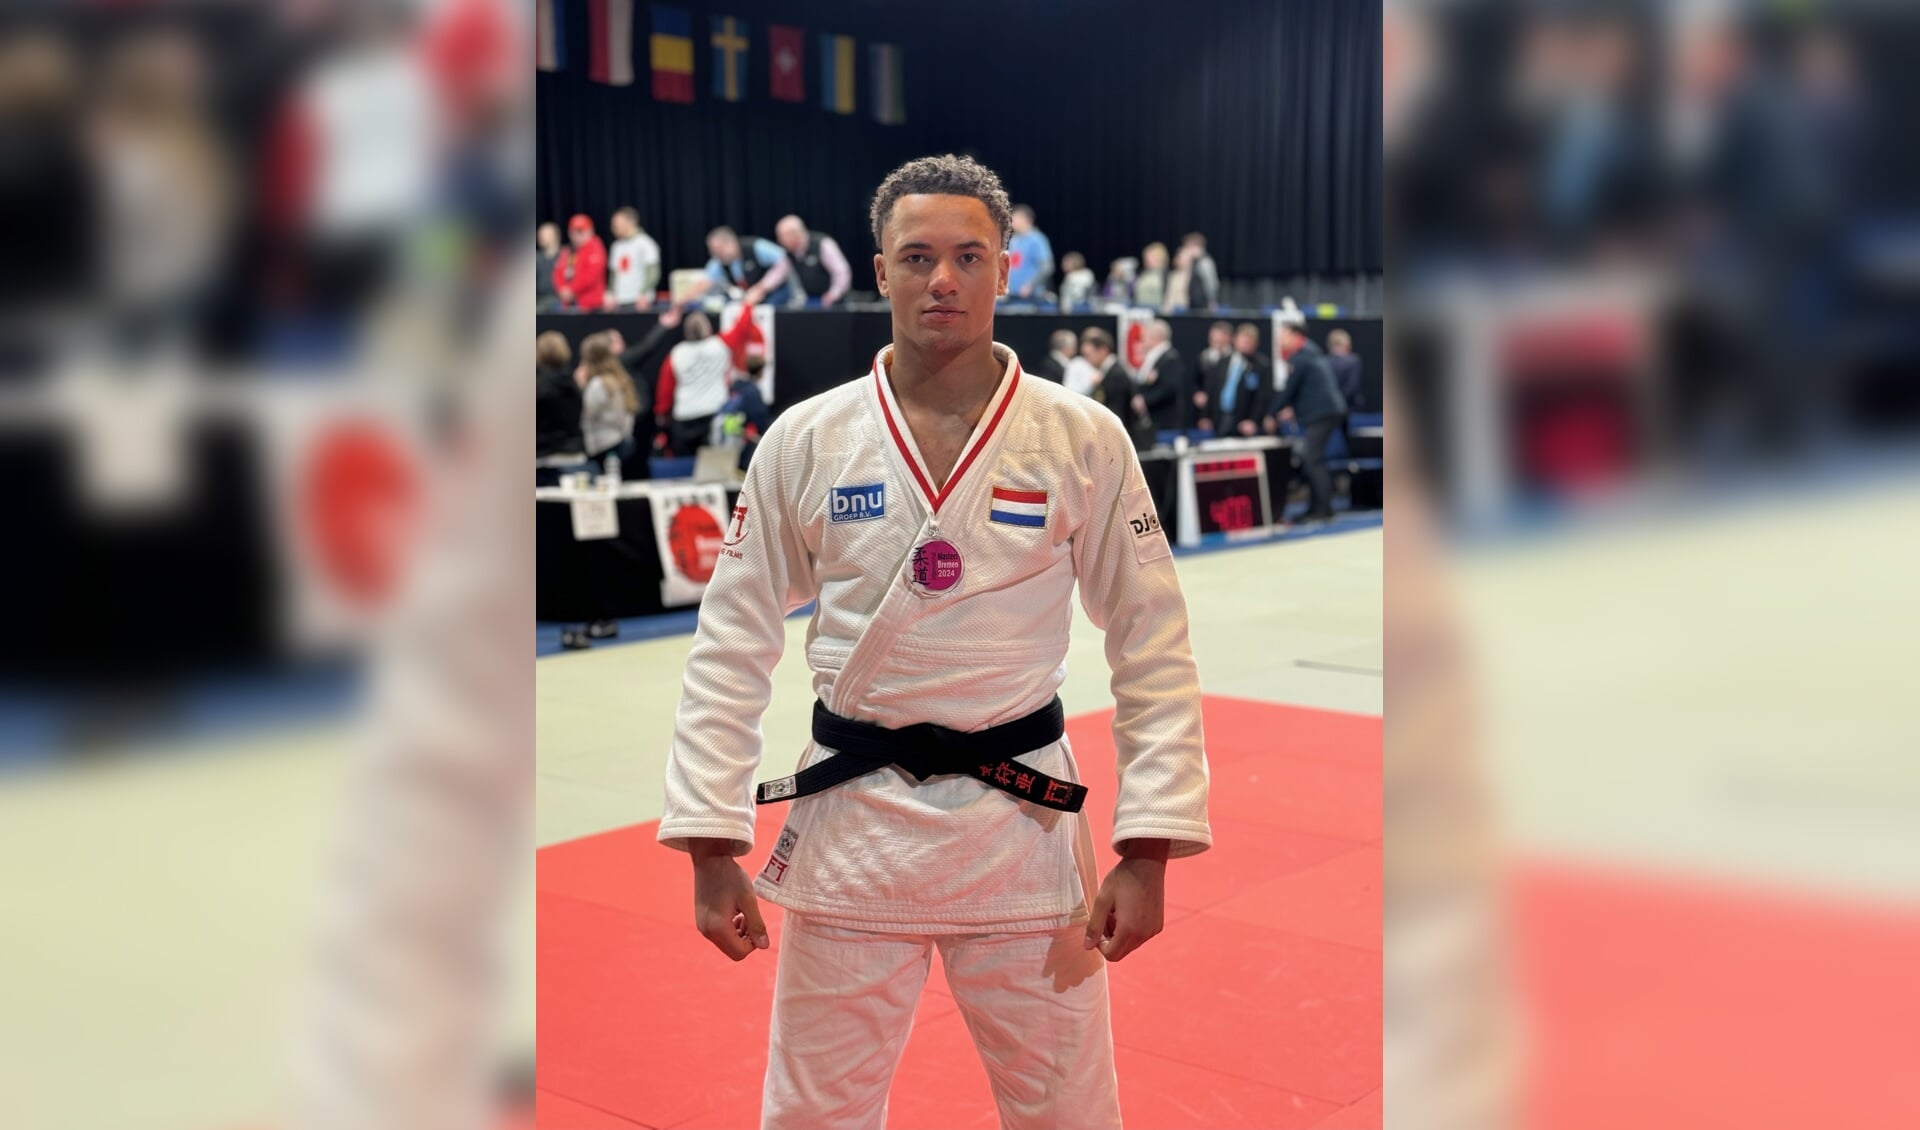 Mahorokan judoka Joshua de Lange.